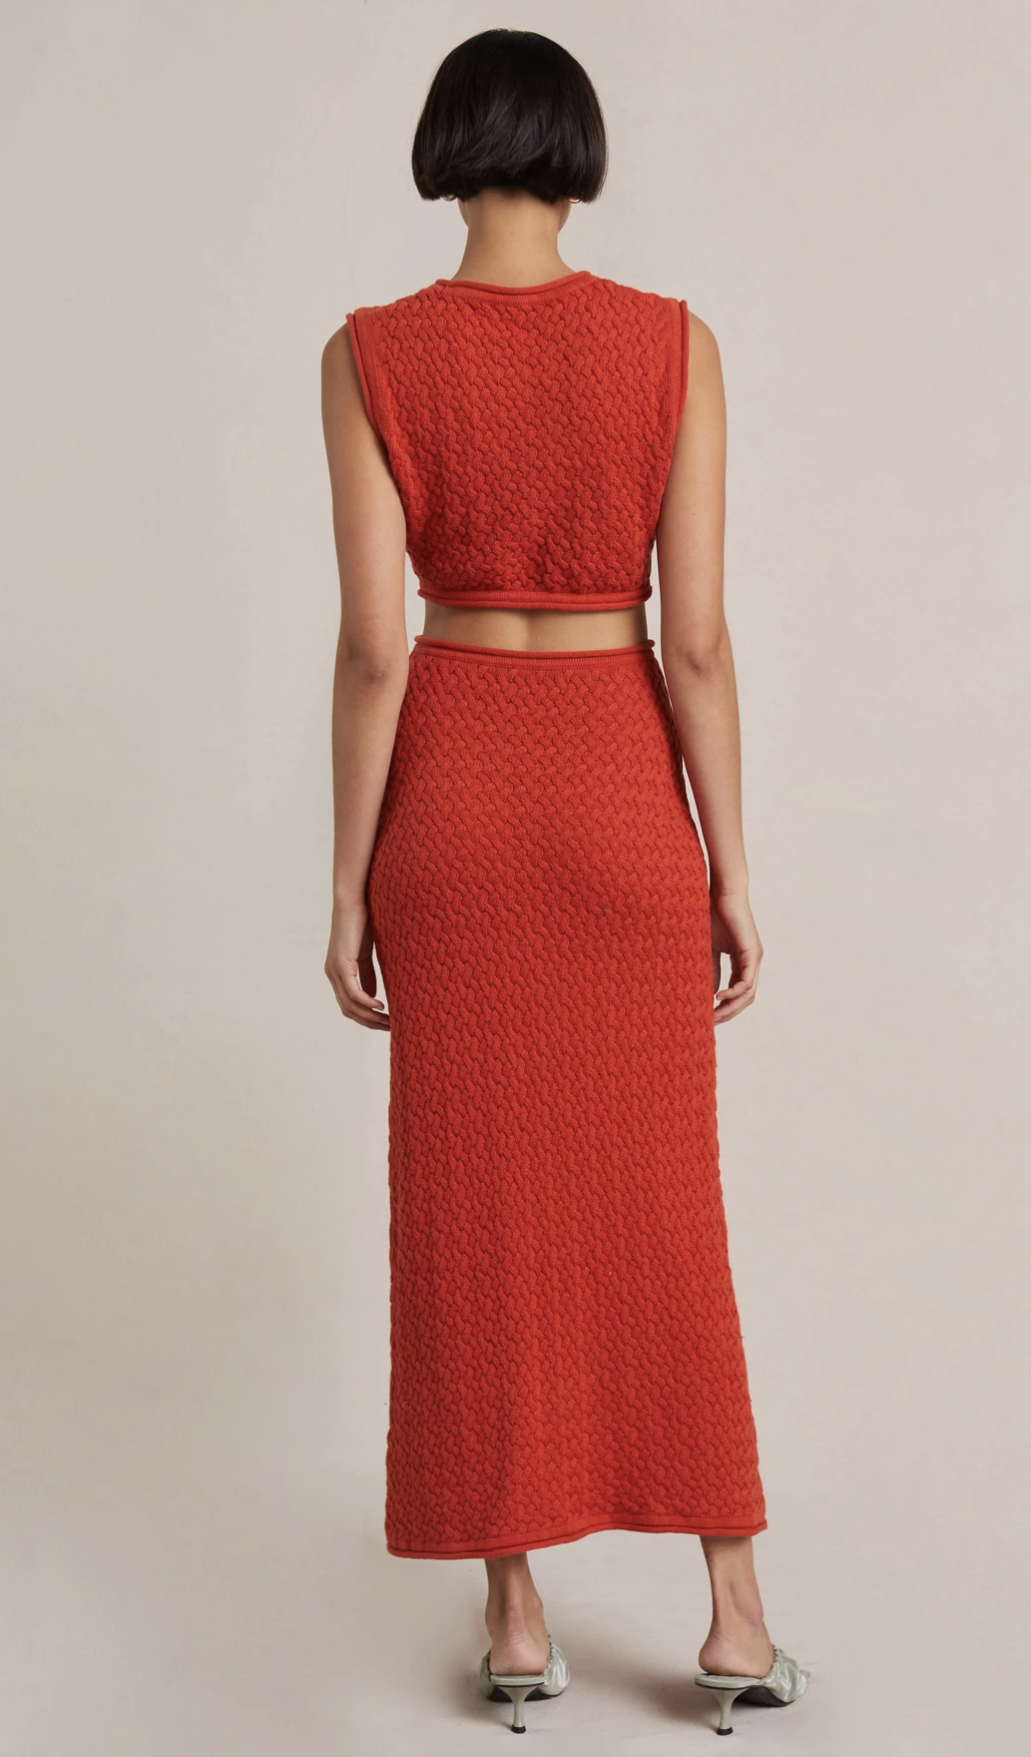 208-effie knit cut out maxi dress cherry au 8 red